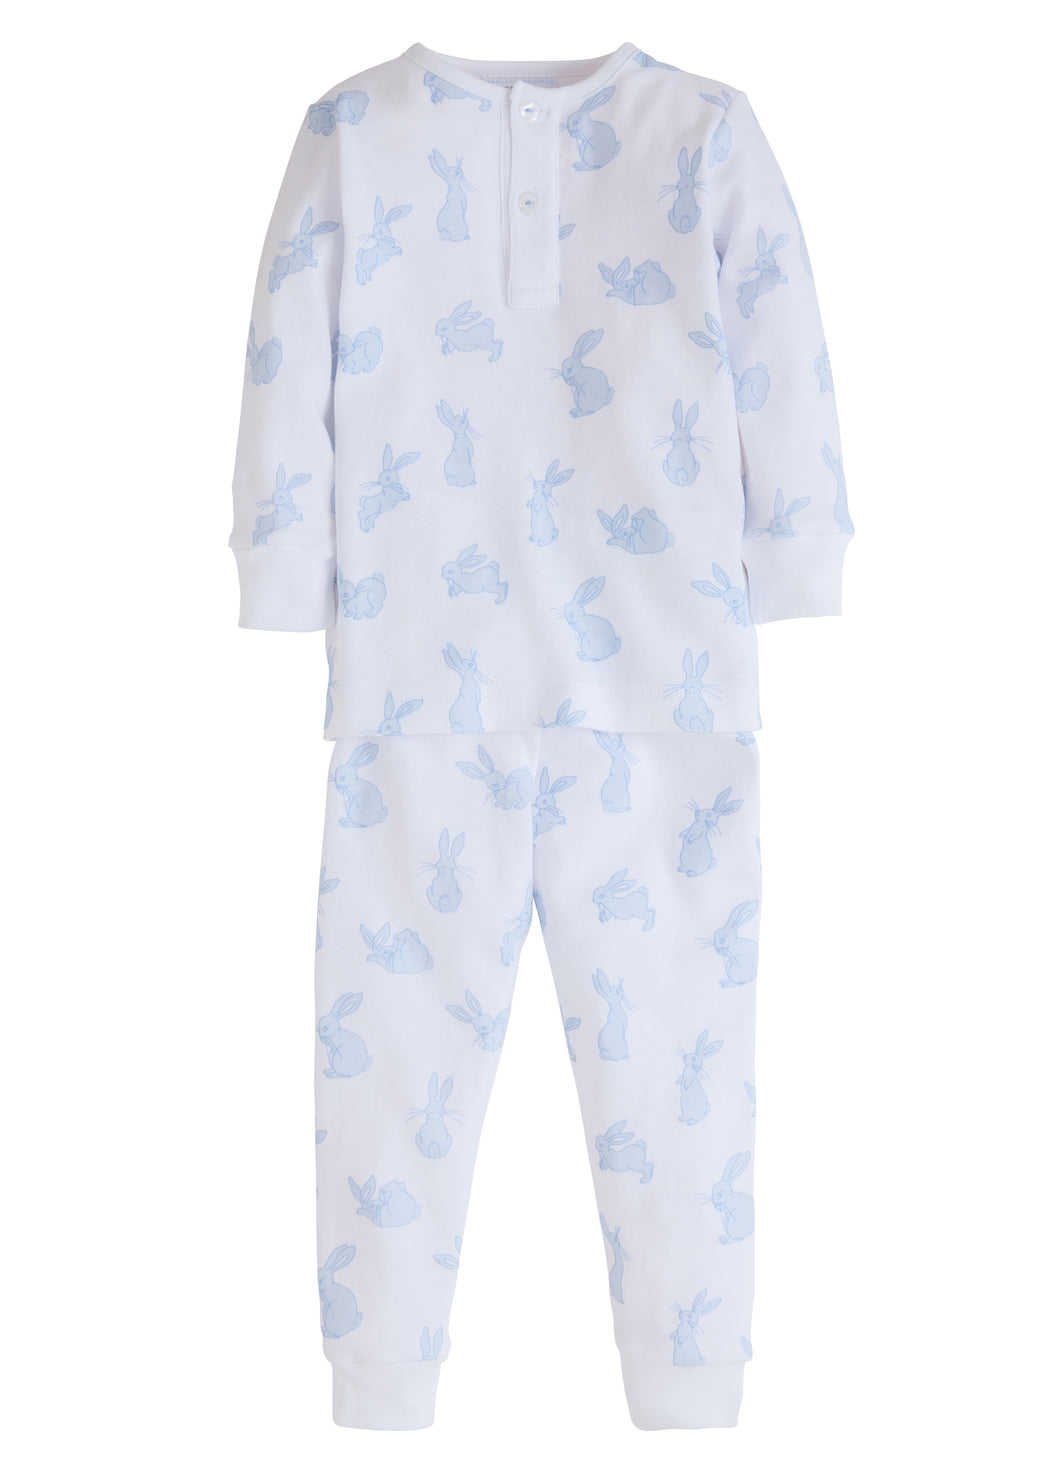 Blue Bunny Printed Pajamas